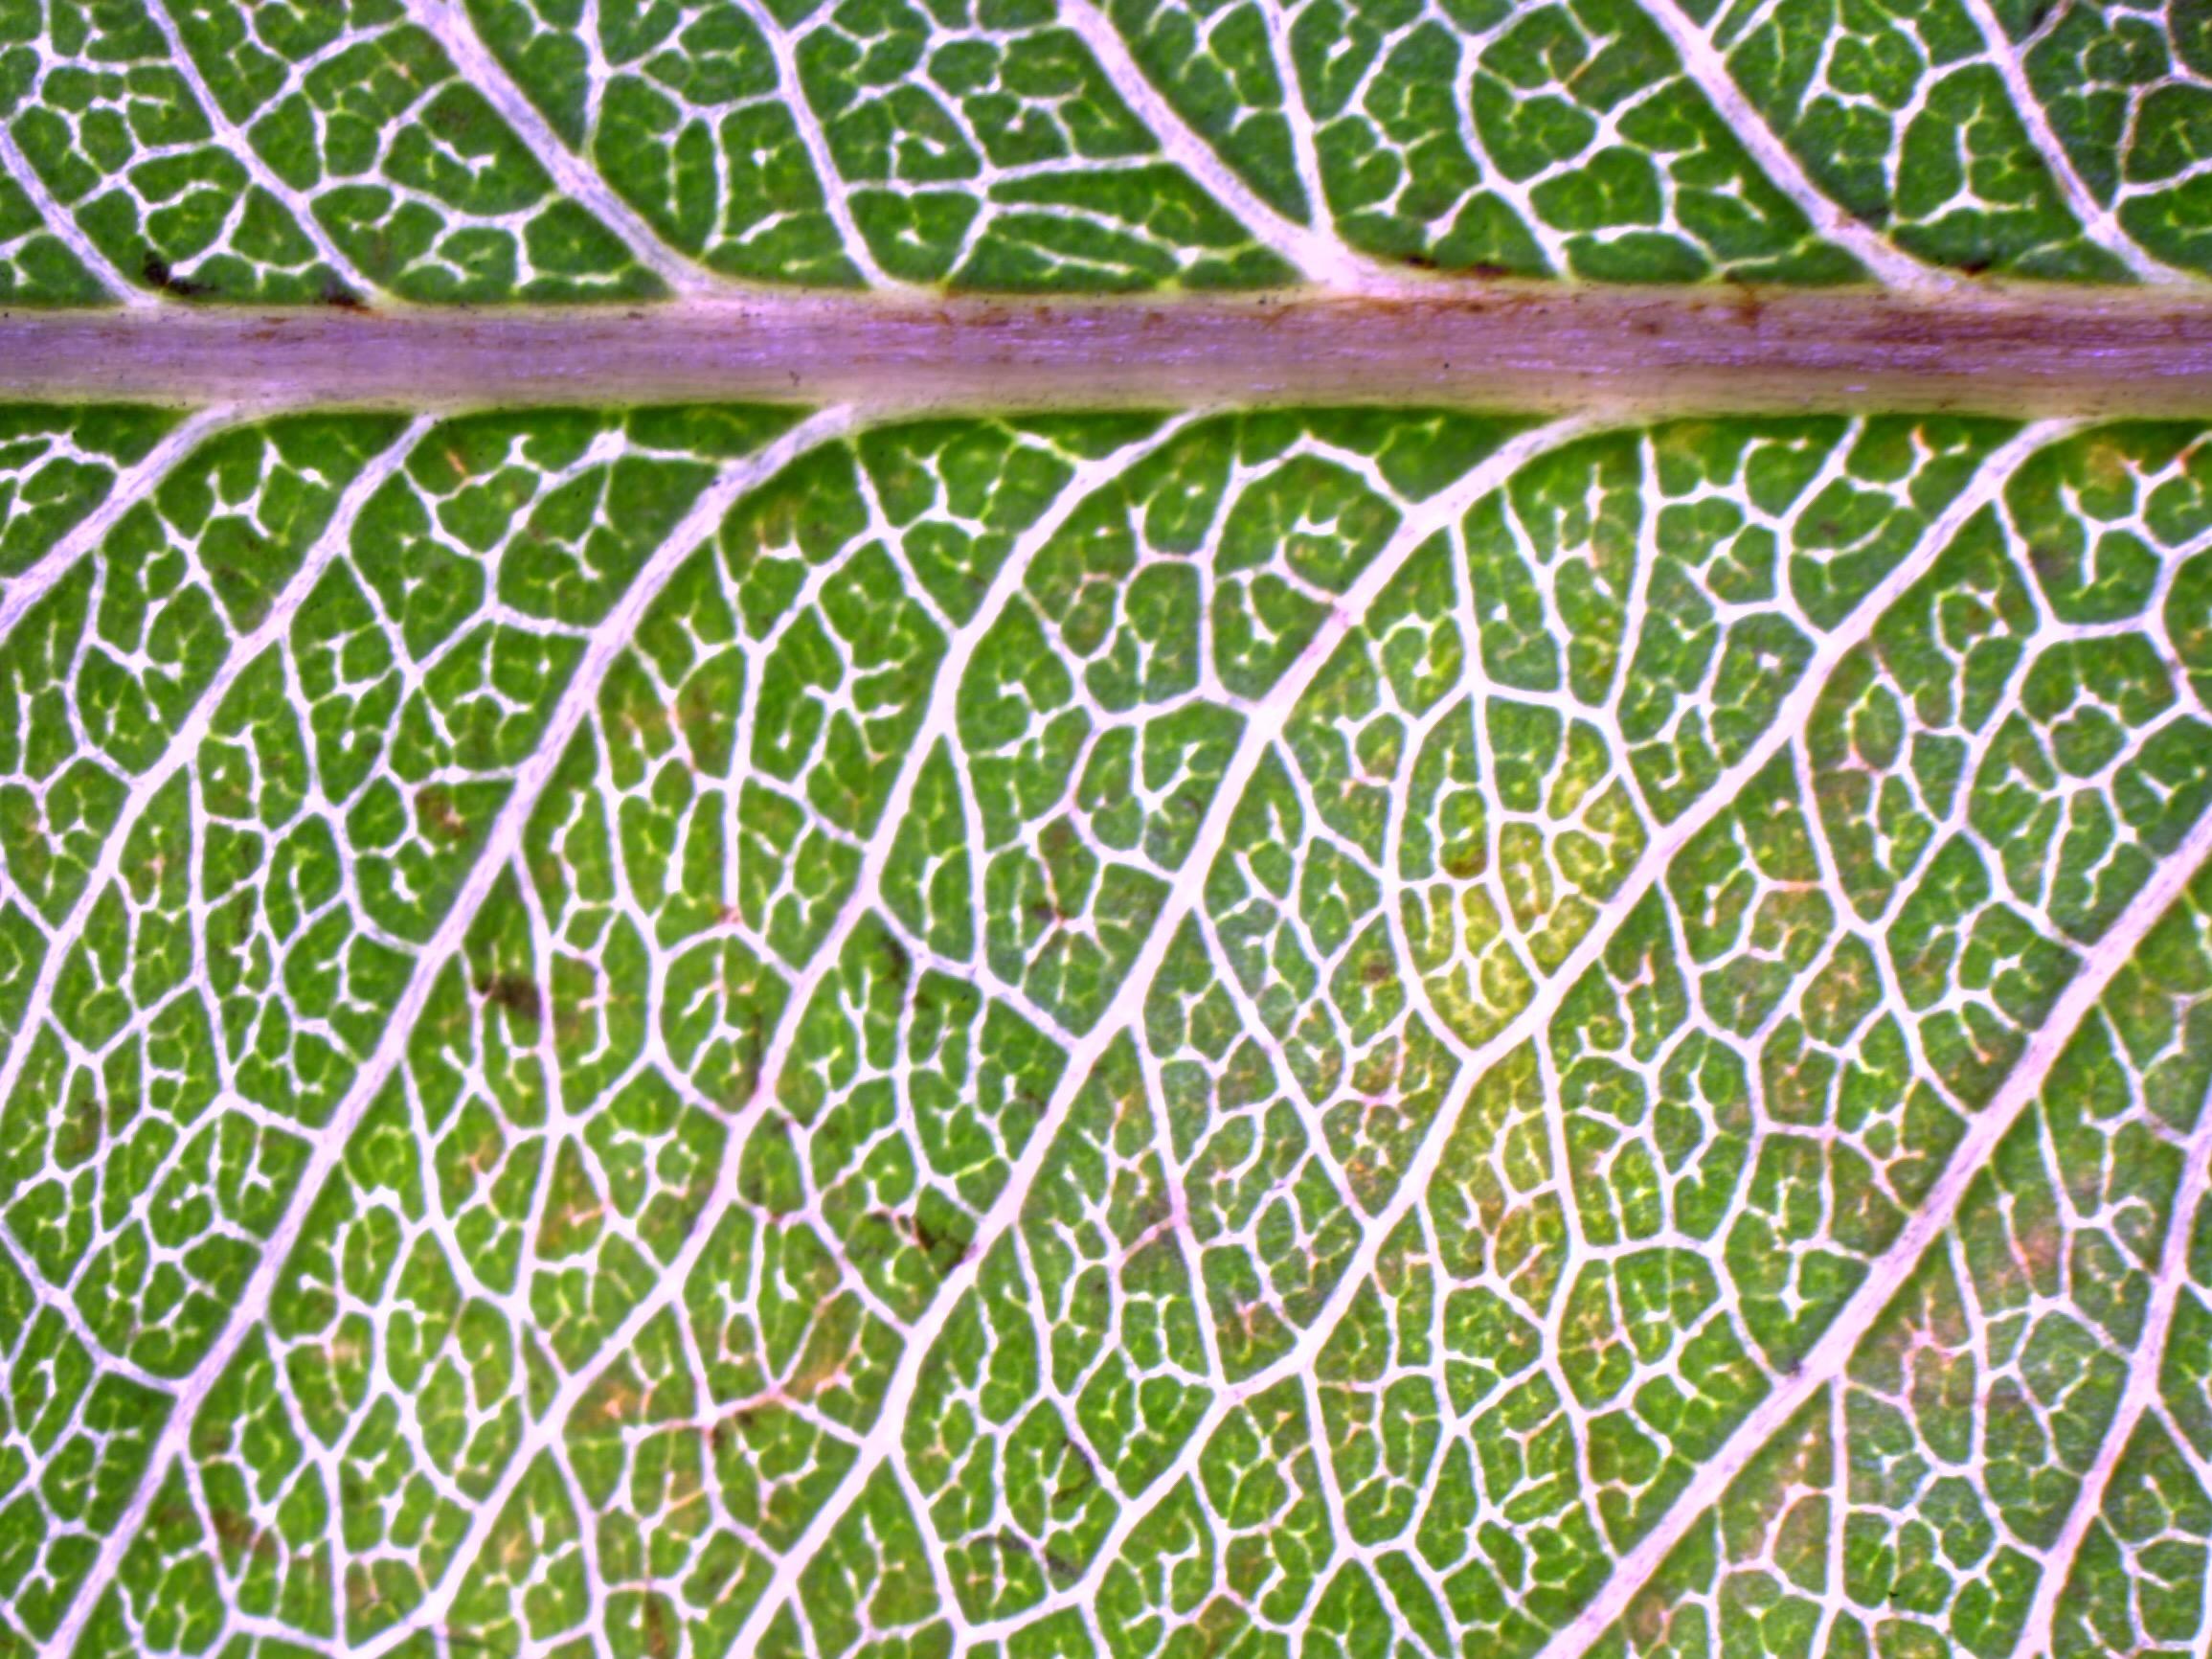 Leaf Venation Patterns in Wine Grapes